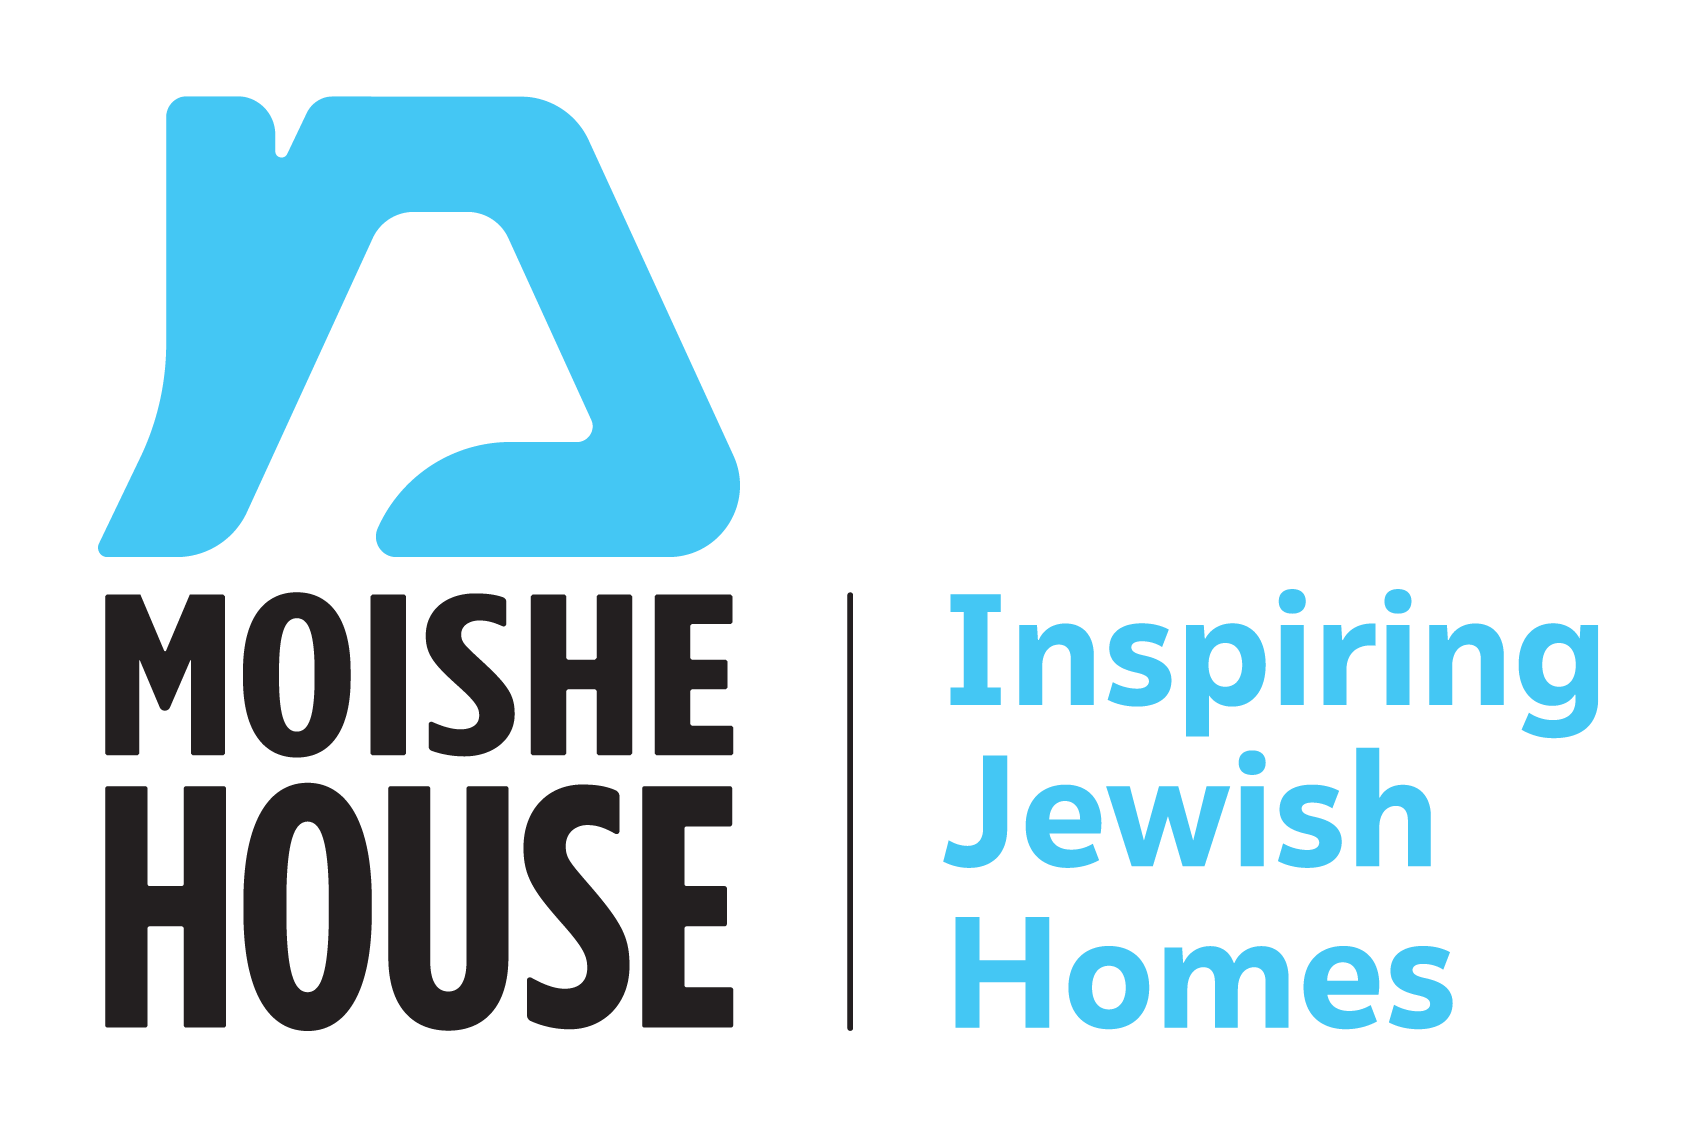 Moishe House logo